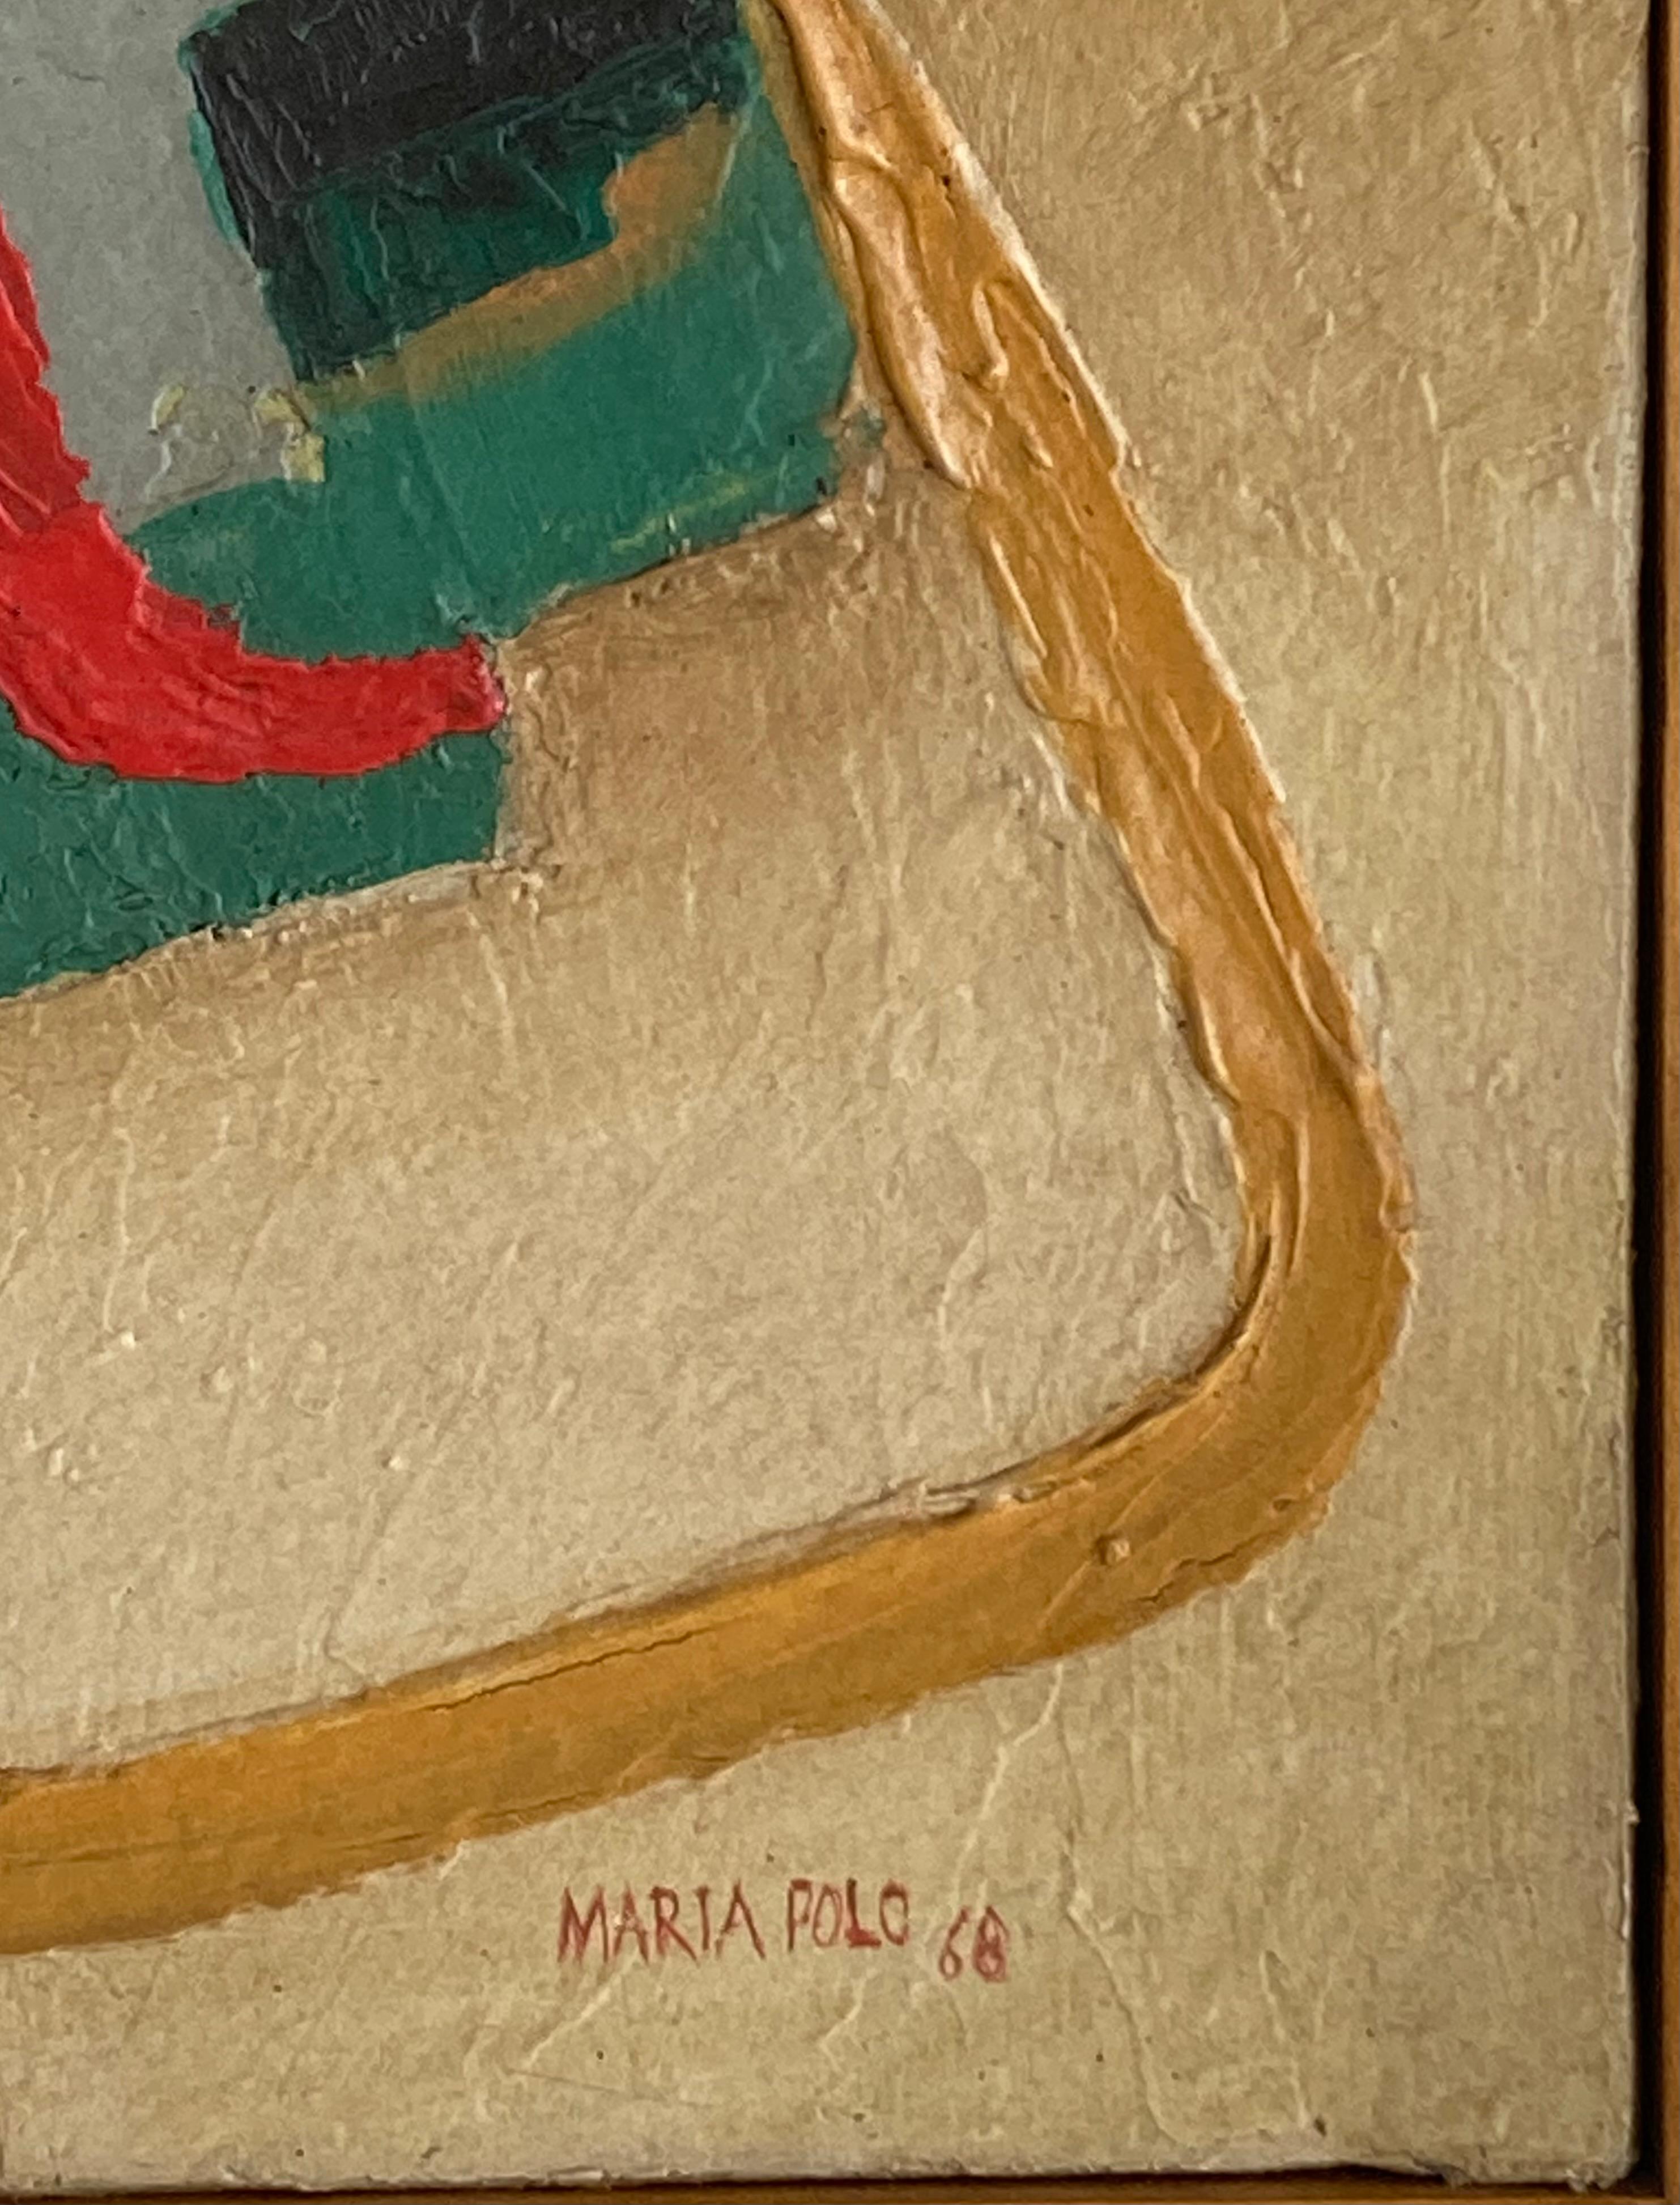 Öl auf leinwand von Maria Polo

Signiert MARIA POLO und datiert 1968

Maria Polo (Venedig, Italien, 1937 - Rio de Janeiro, Brasilien, 1983). Maler, Designer, Graveur und Vitralist. Studierte zwischen 1949 und 1955 am Kunstinstitut von Venedig. Vier